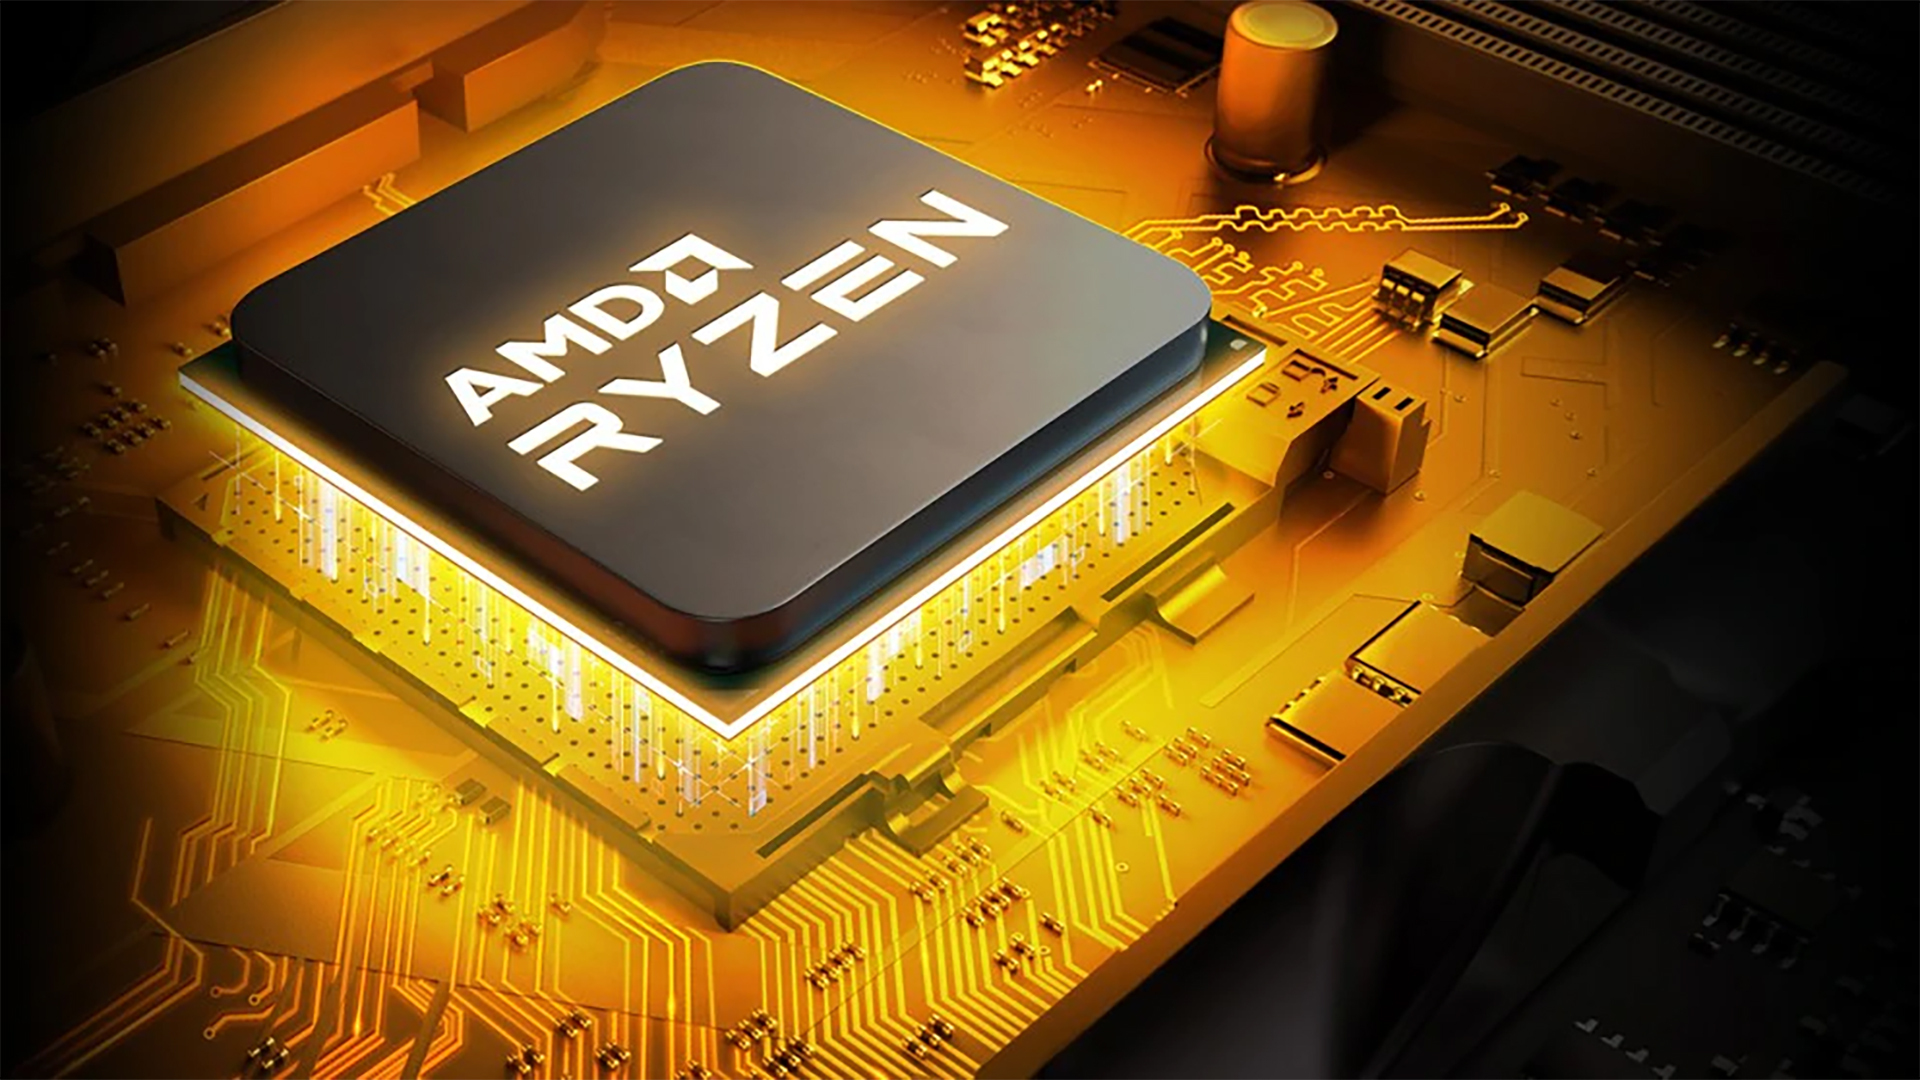 Amd's Ryzen Processors Box Art Leaked